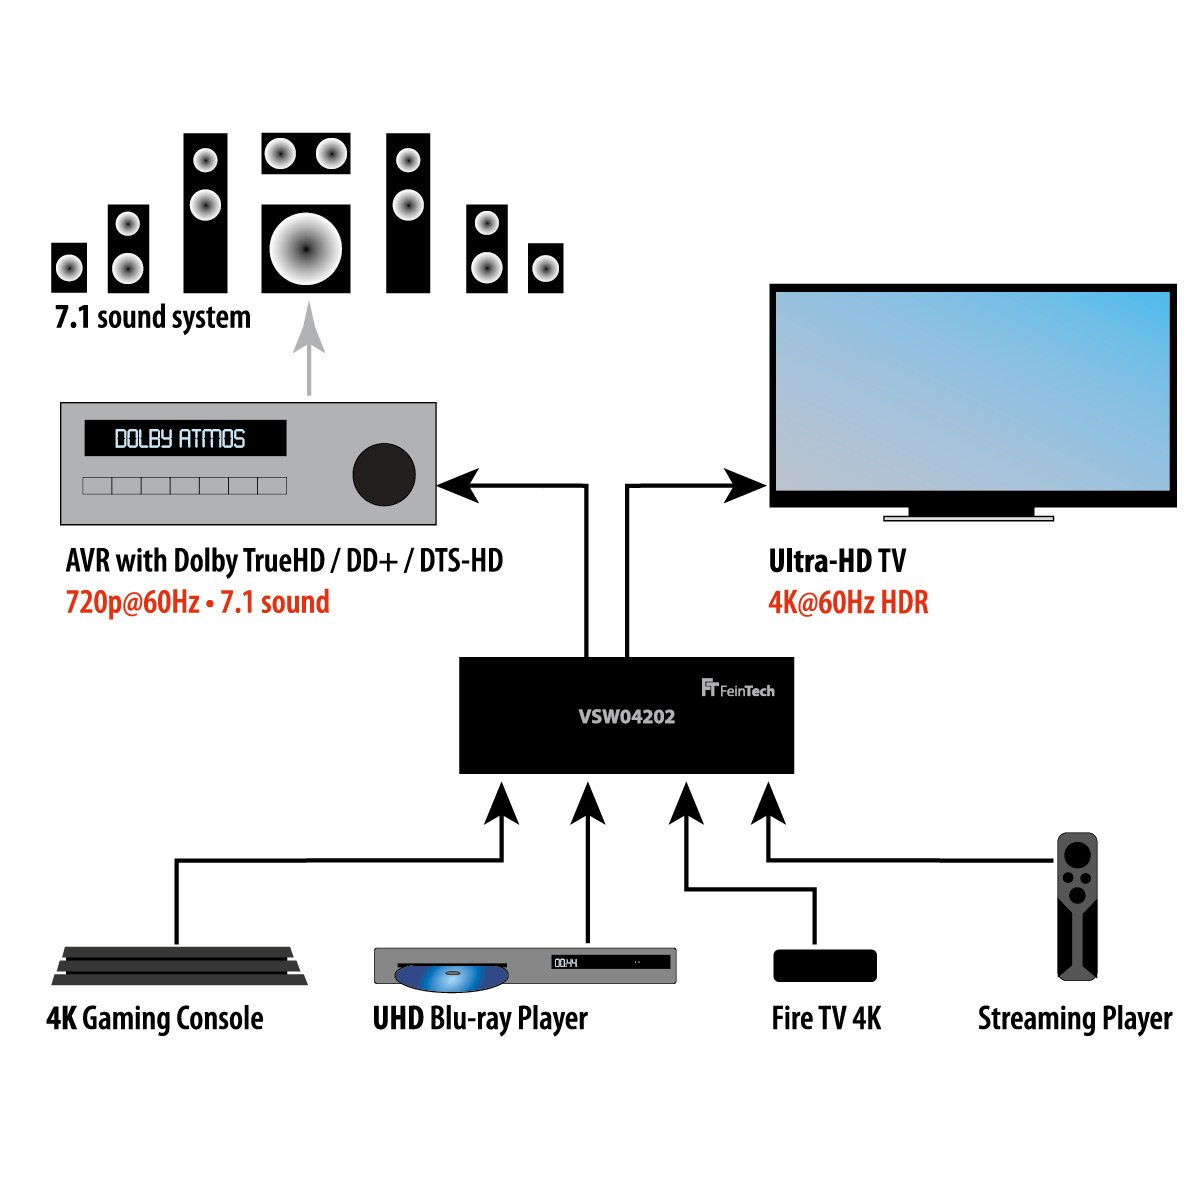 HDMI HD-Audio FEINTECH Matrix Switch mit 2.0 HDMI Switch HDMI 4x1+1